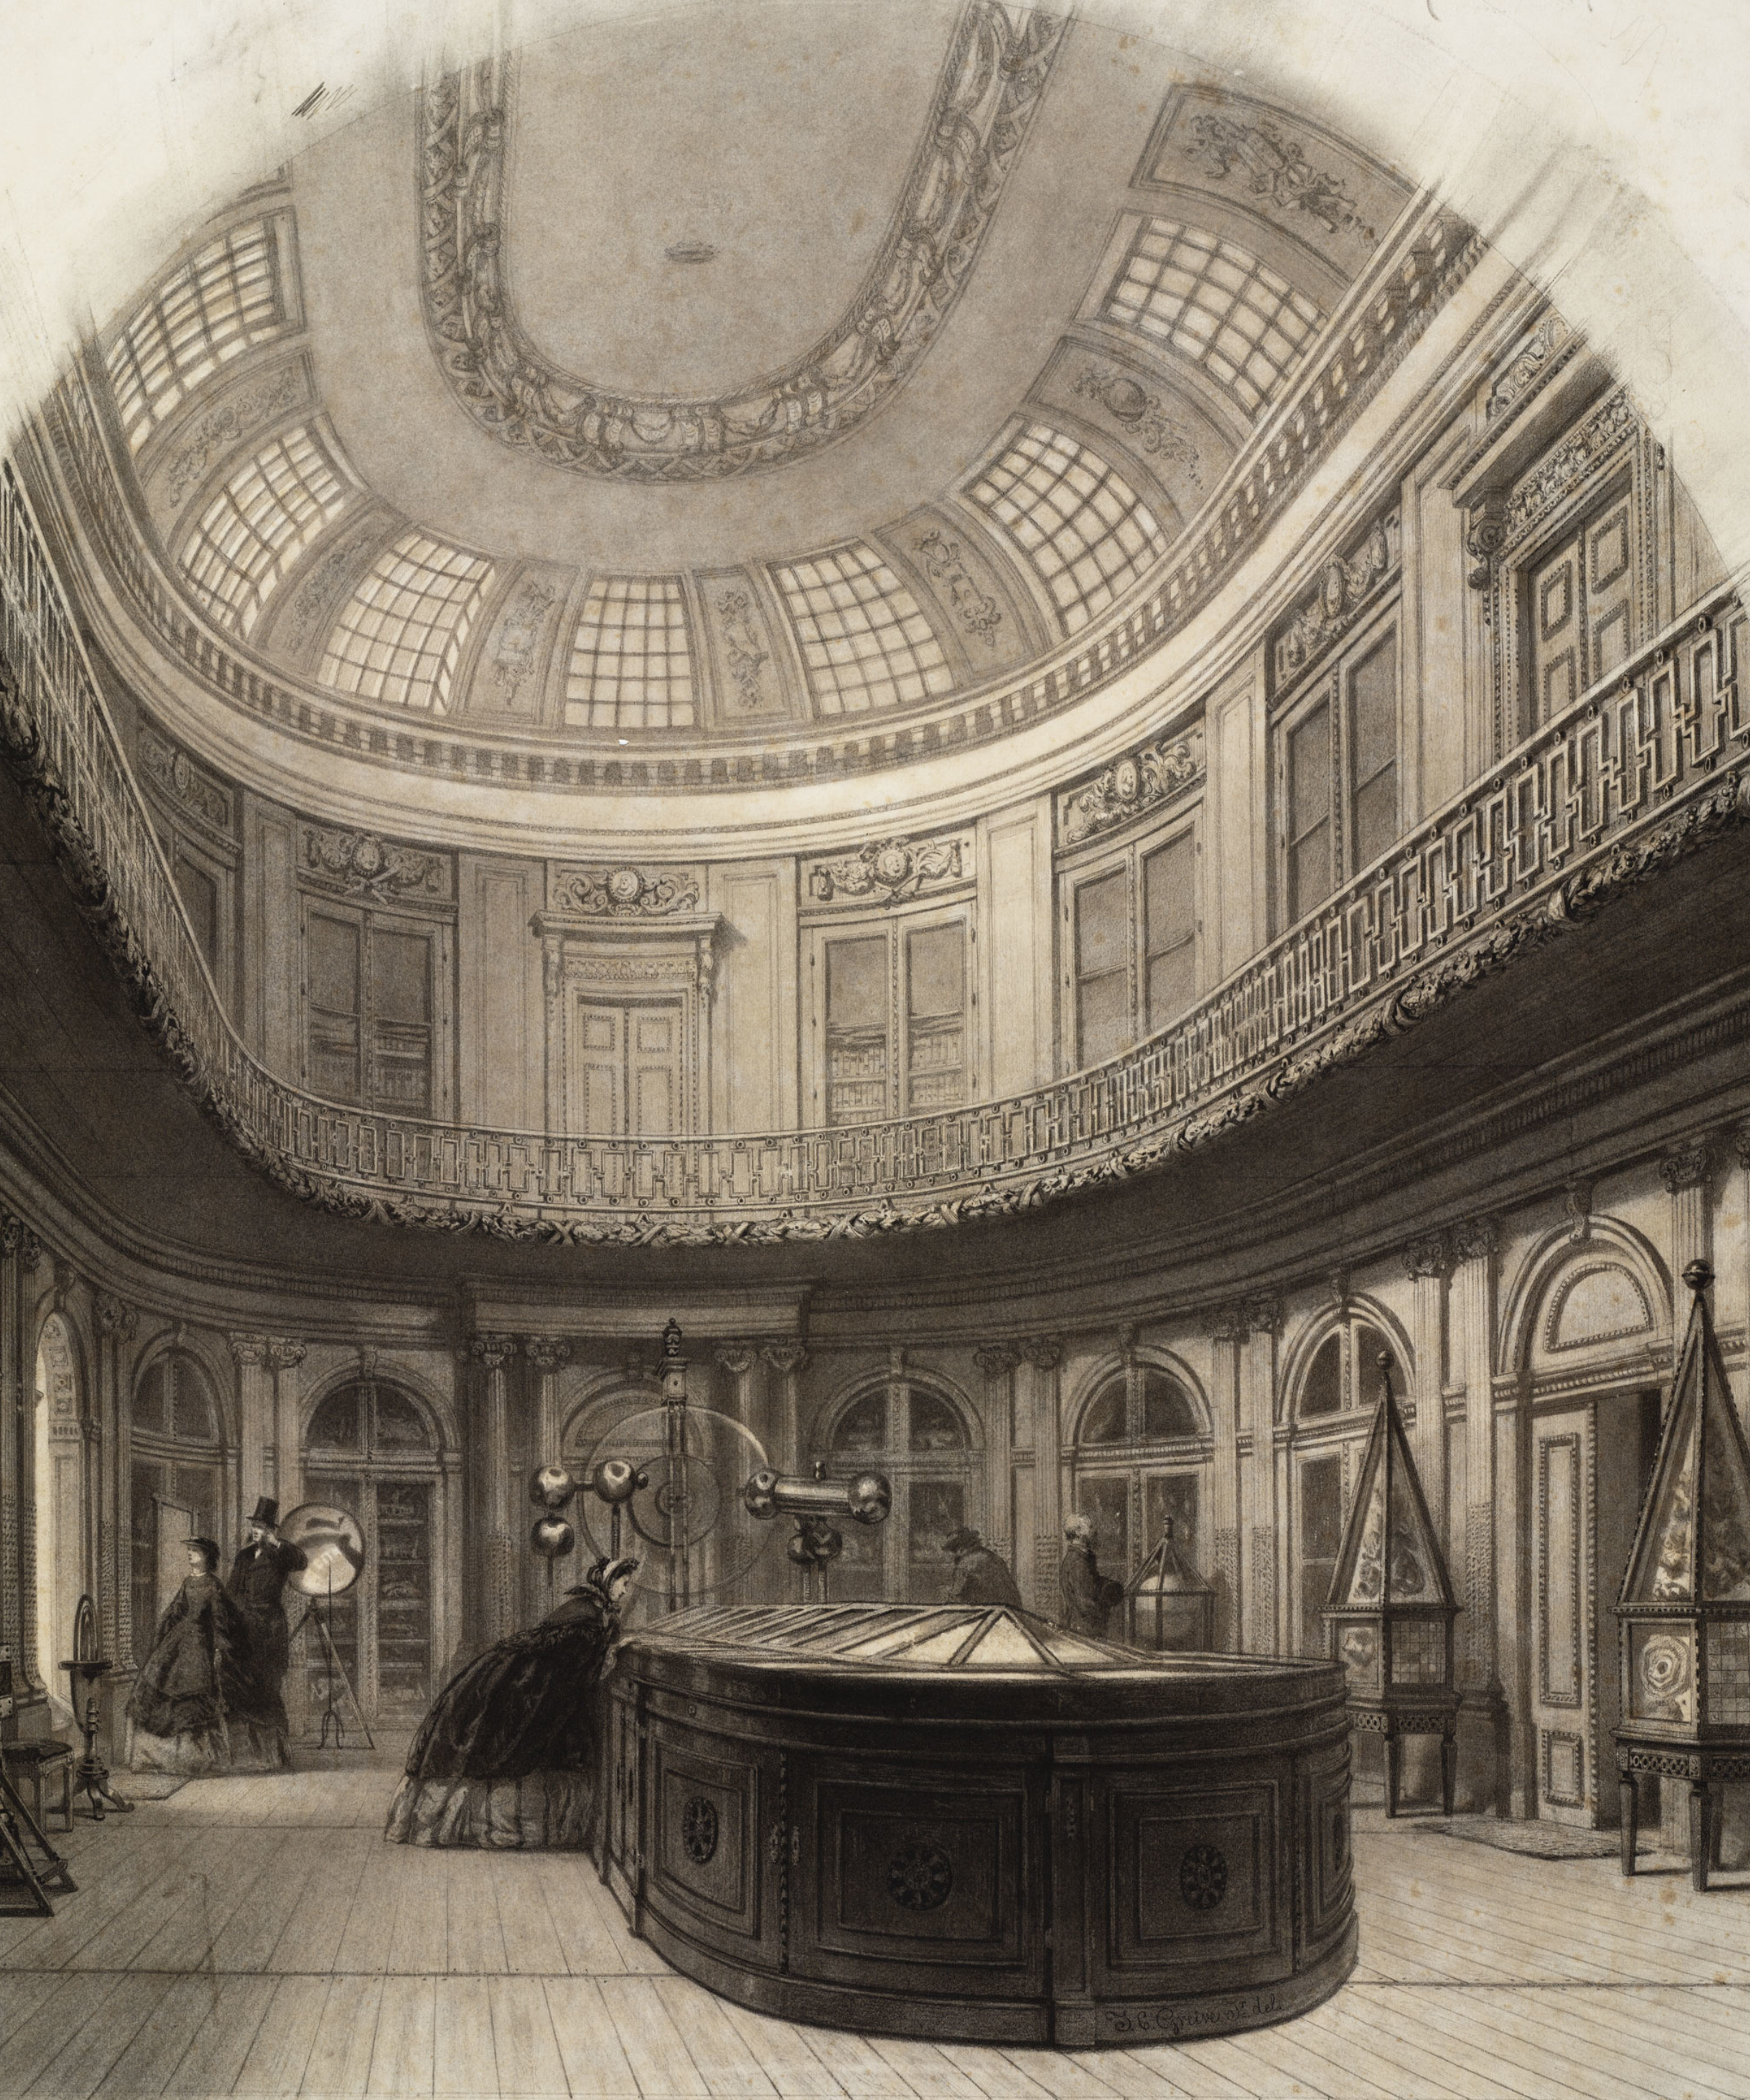 Johan Conrad Greive, 'De Ovale Zaal met bezoekers', 1862.